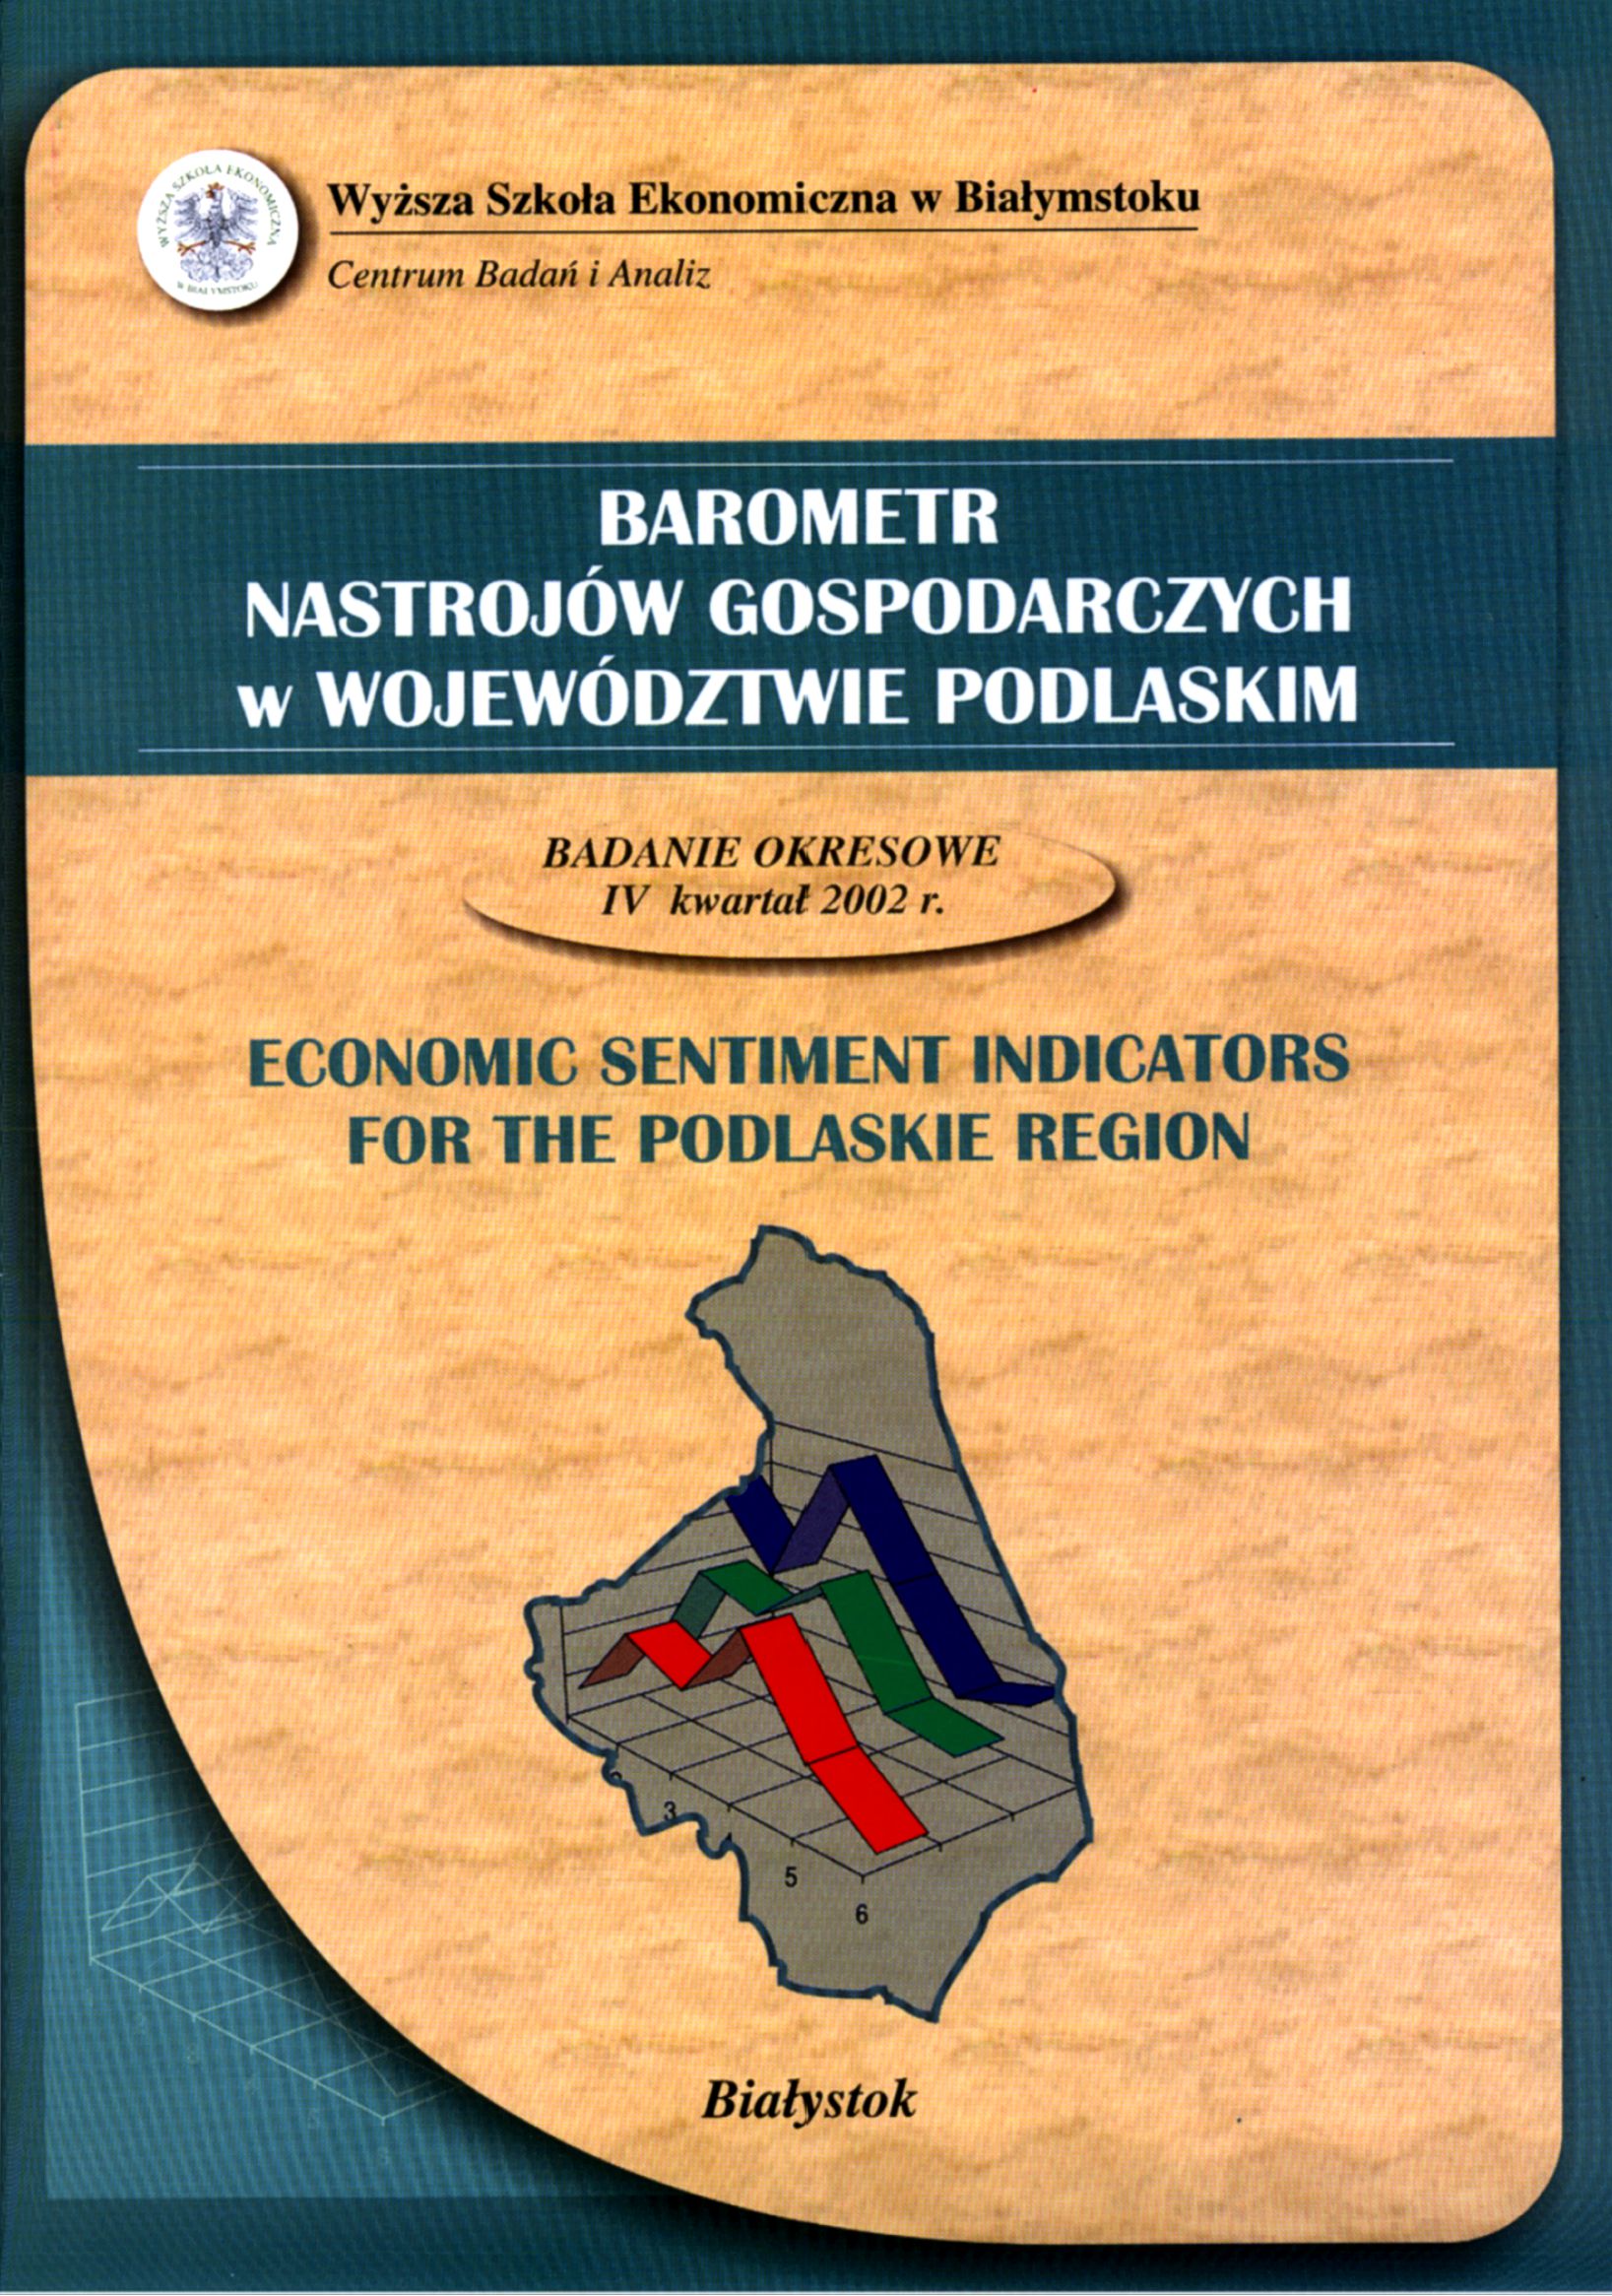 Barometr nastrojów gospodarczych w województwie Podlaskim; badania okresowe IV kwartał 2002 r.